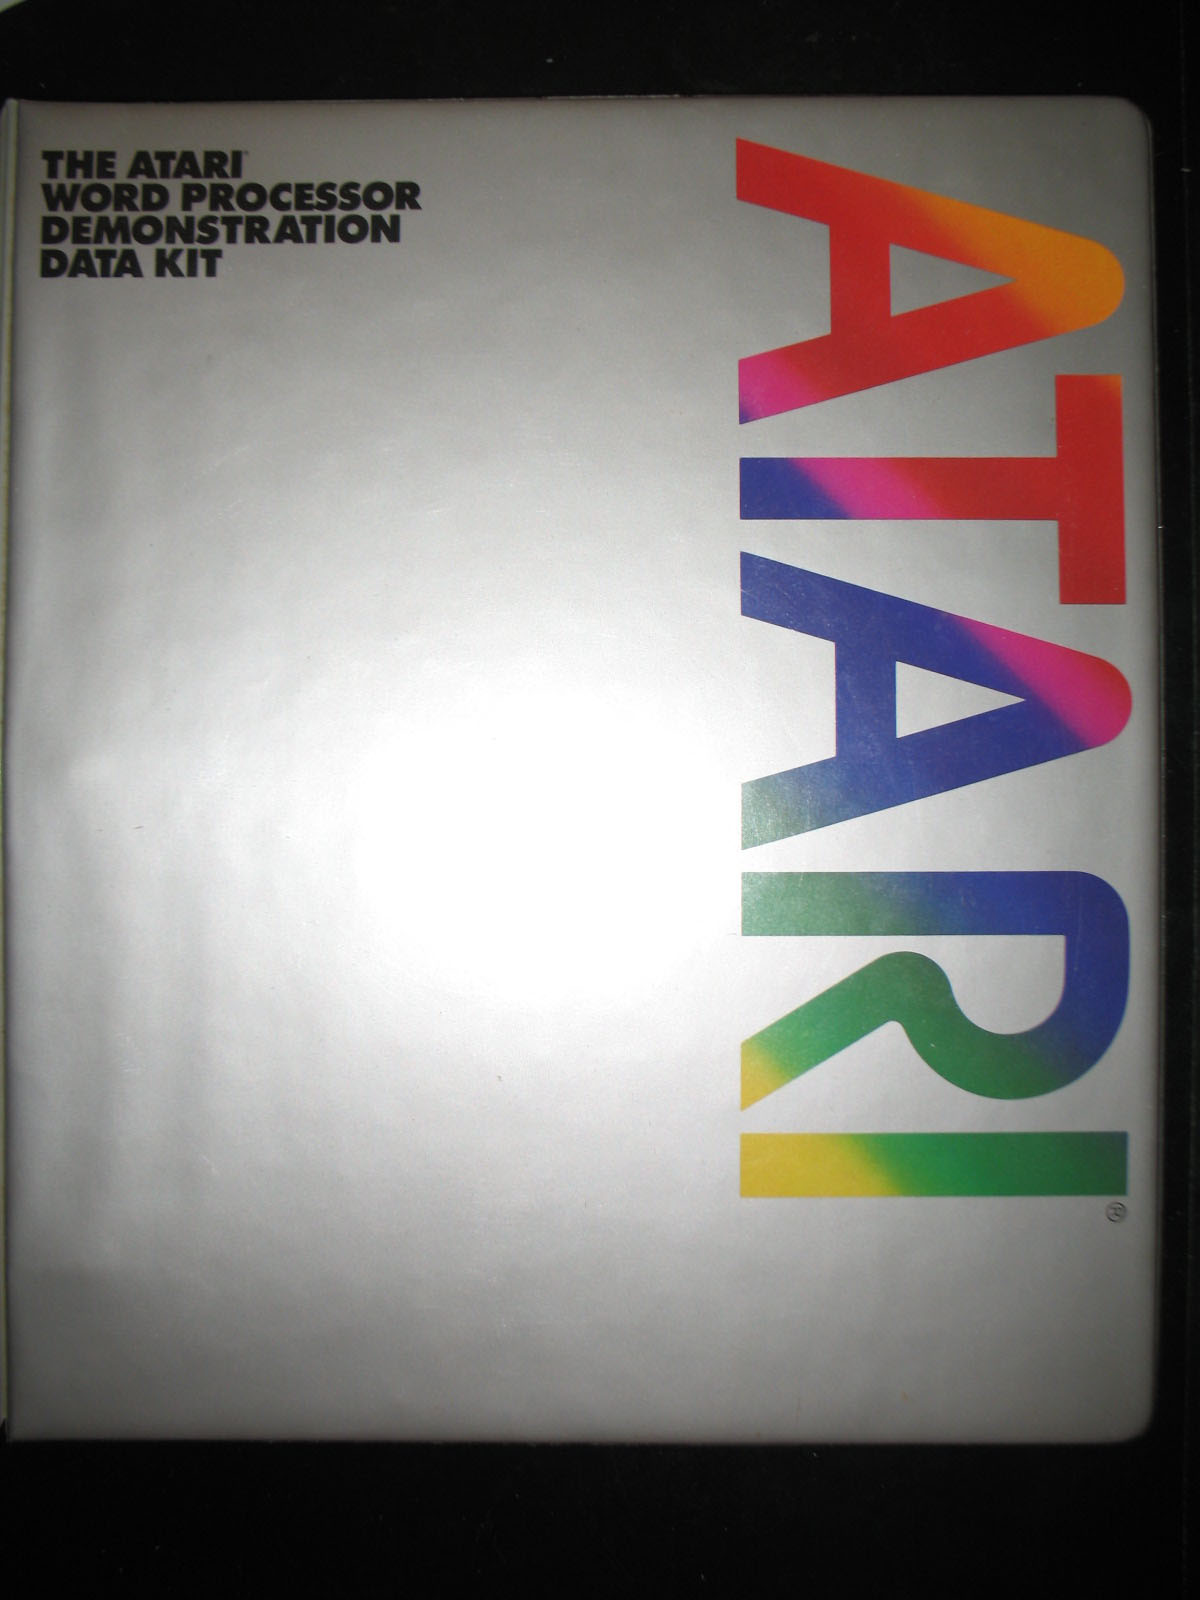 Atari Word Processor/The_Atari_Word_Processor_Demonstration_Data_Kit_CX8128_box.jpg